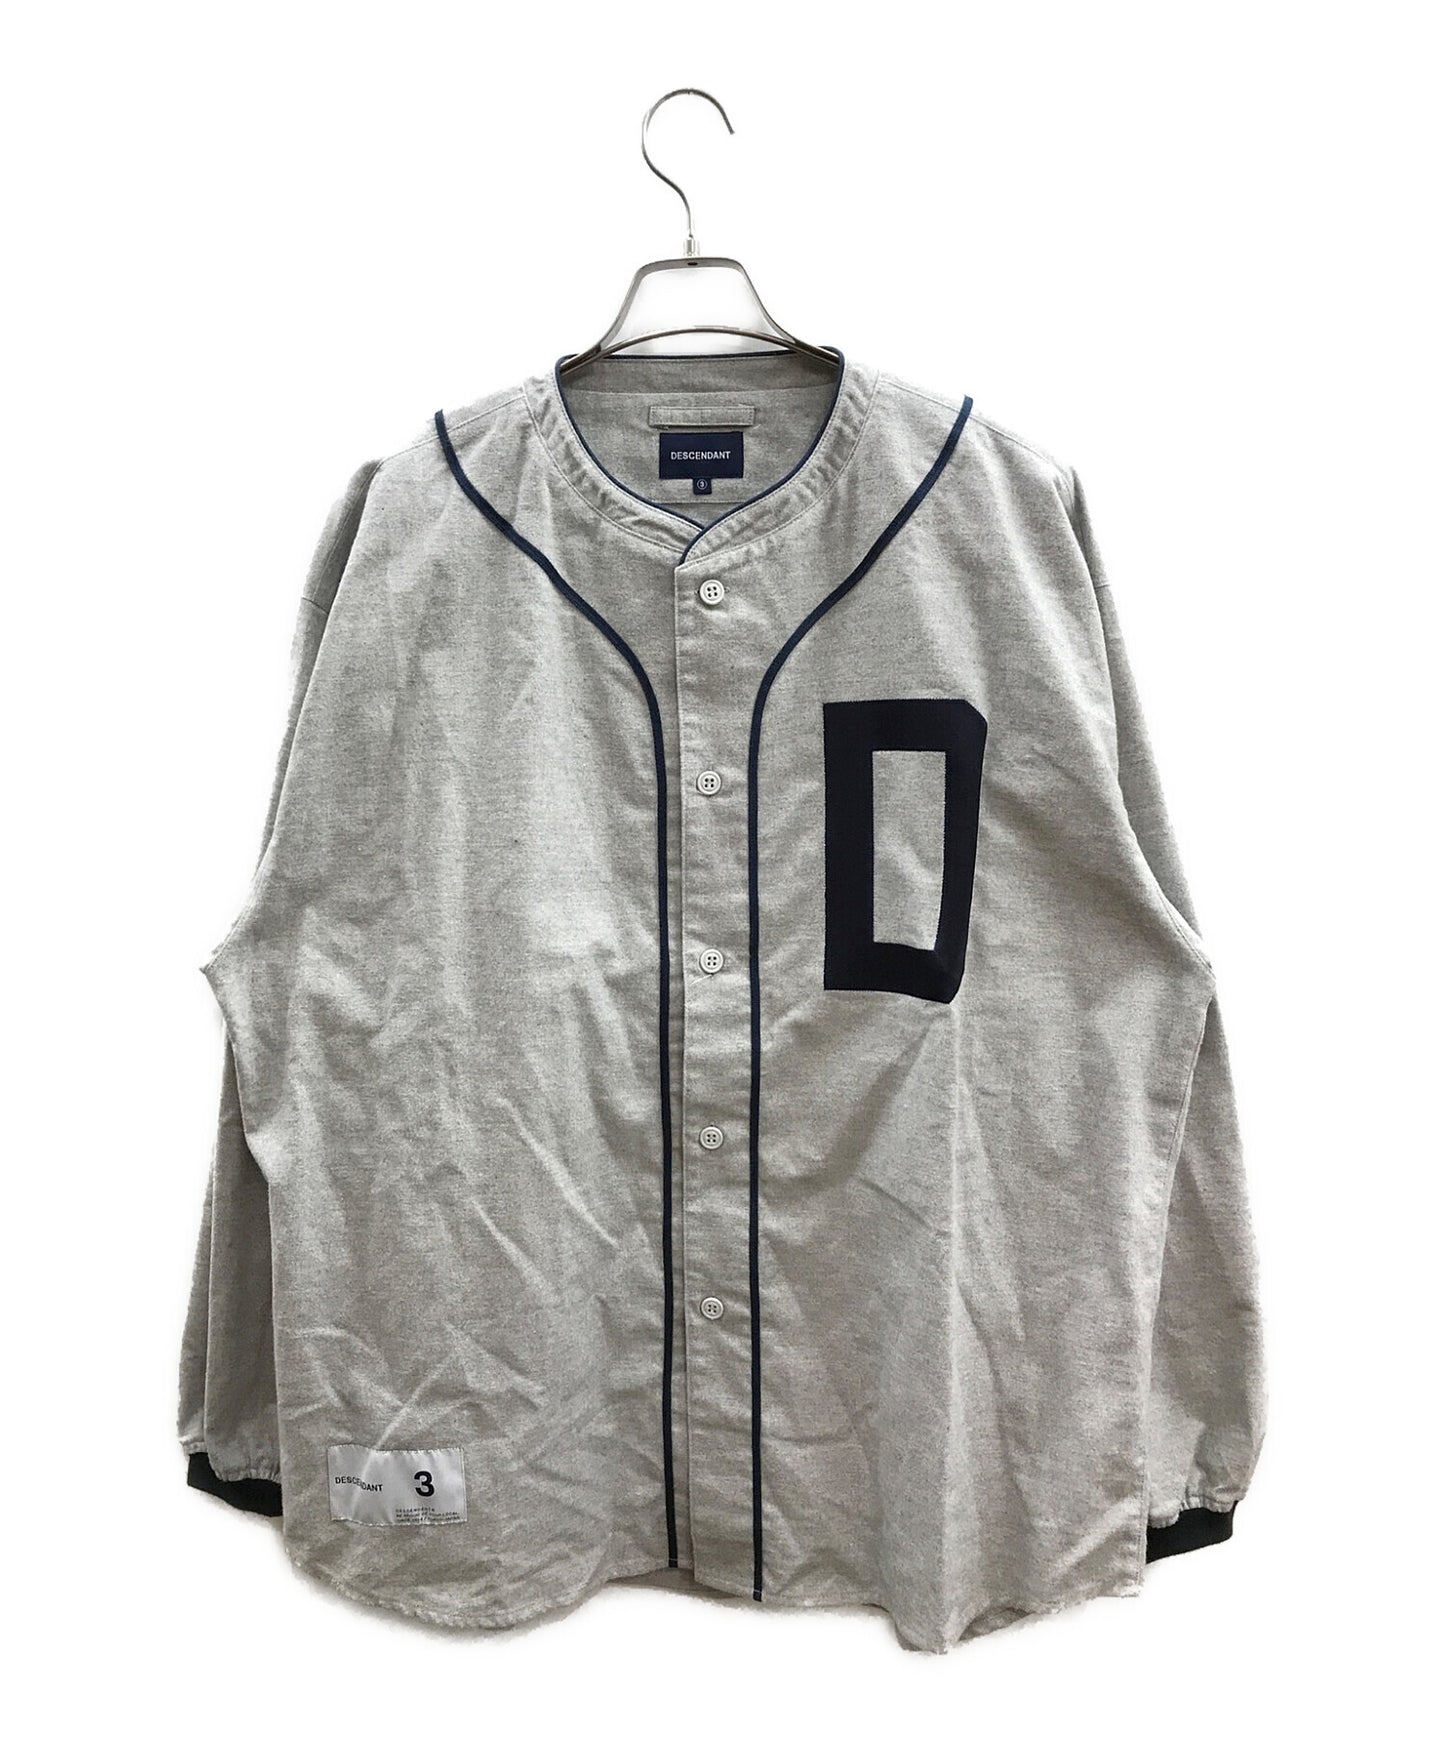 후손 면화 플란넬 셔츠/야구 셔츠/블레릭 야구 셔츠 221TQDS-SHM09